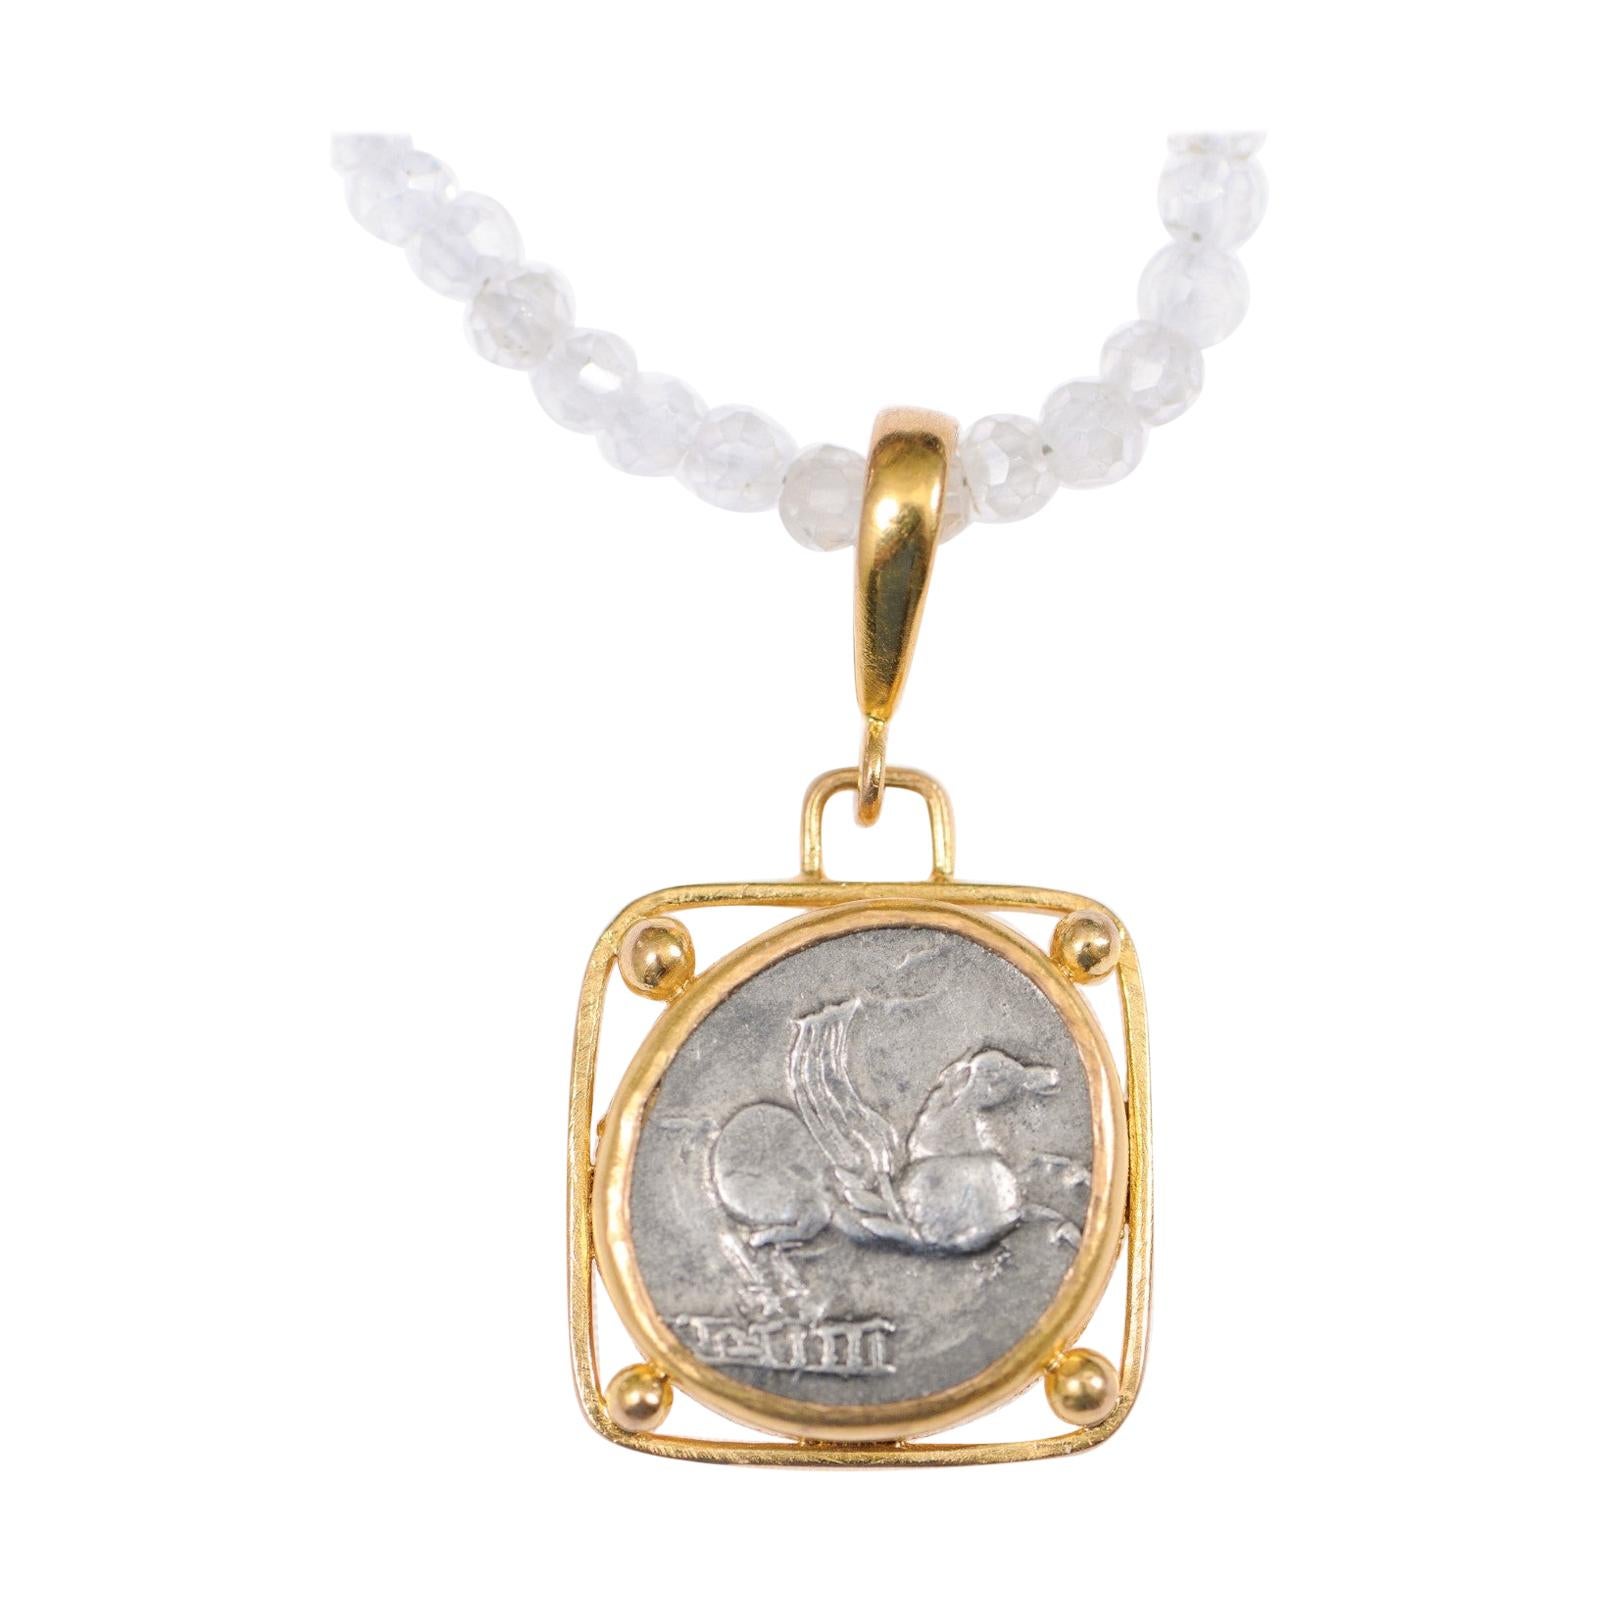 Authentique pièce de monnaie romaine en A Silver avec Pegasus sertie dans un pendentif en or 22k personnalisé en vente